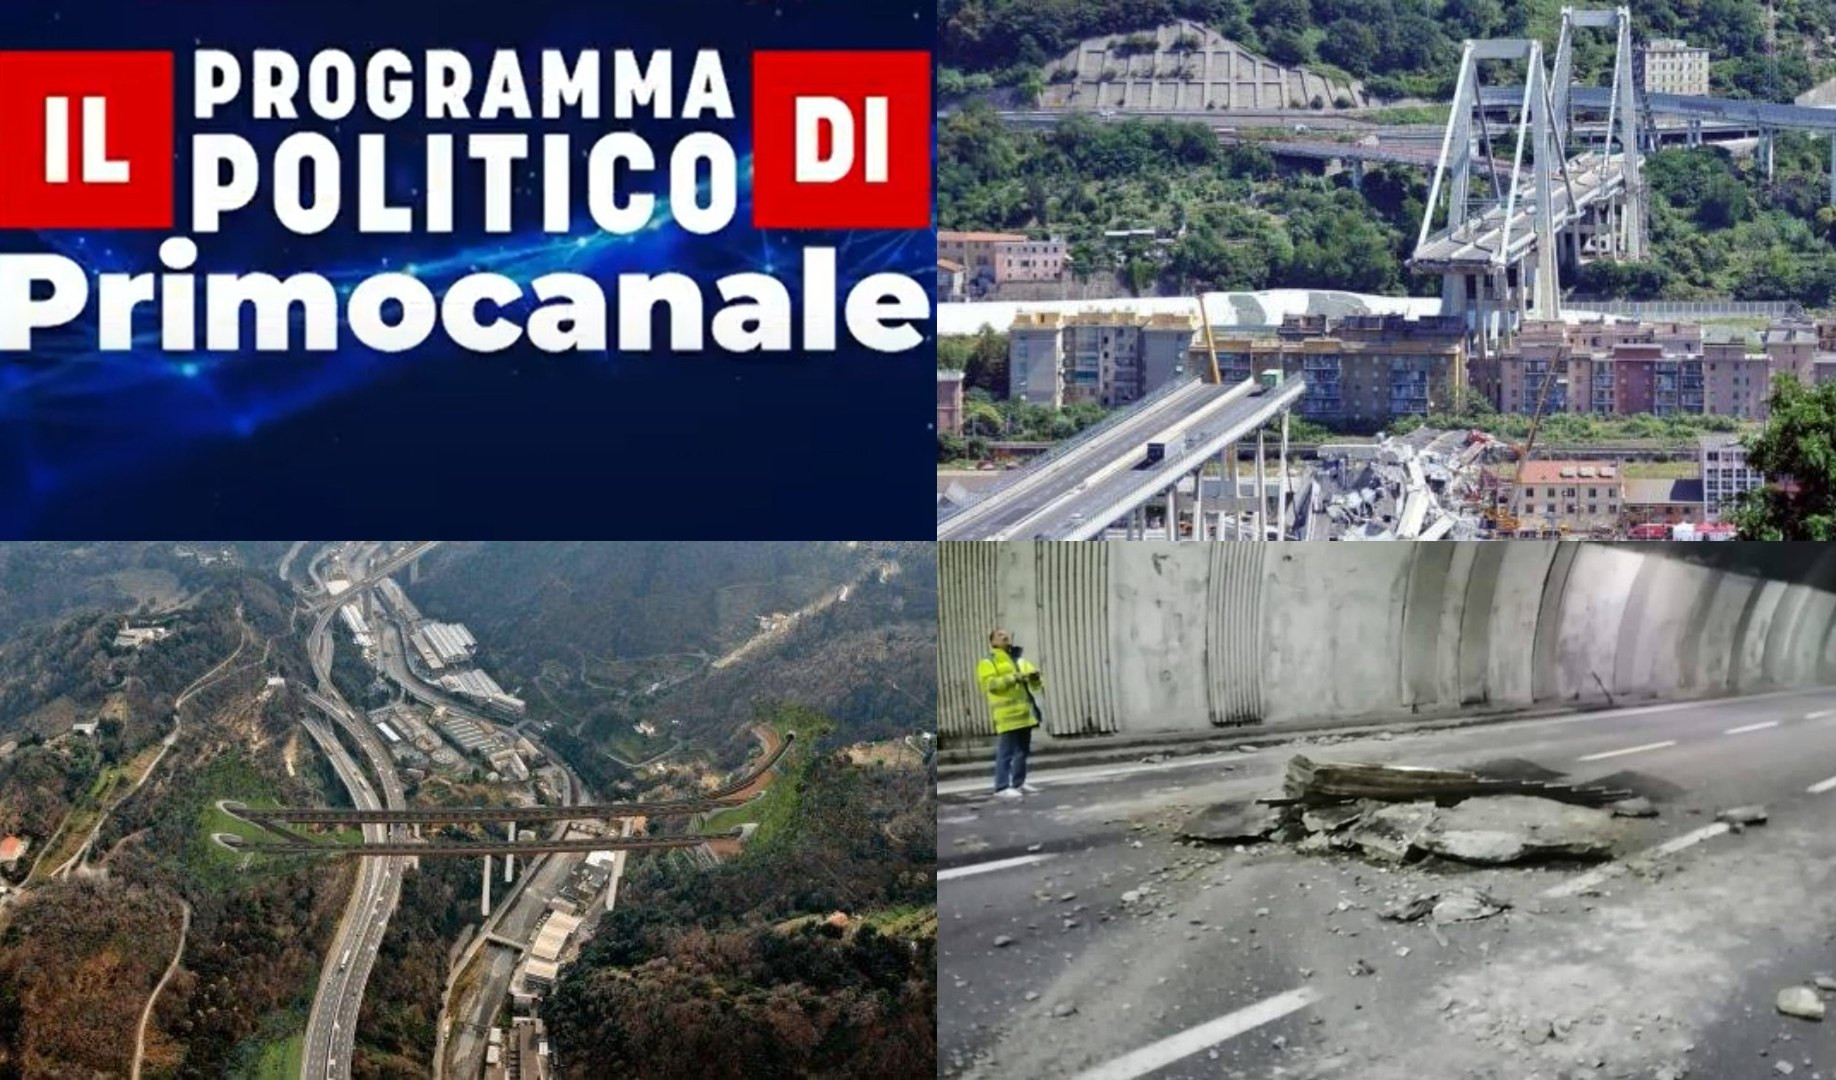 Il Programma politico di Primocanale - La pesante eredità di Ponte Morandi